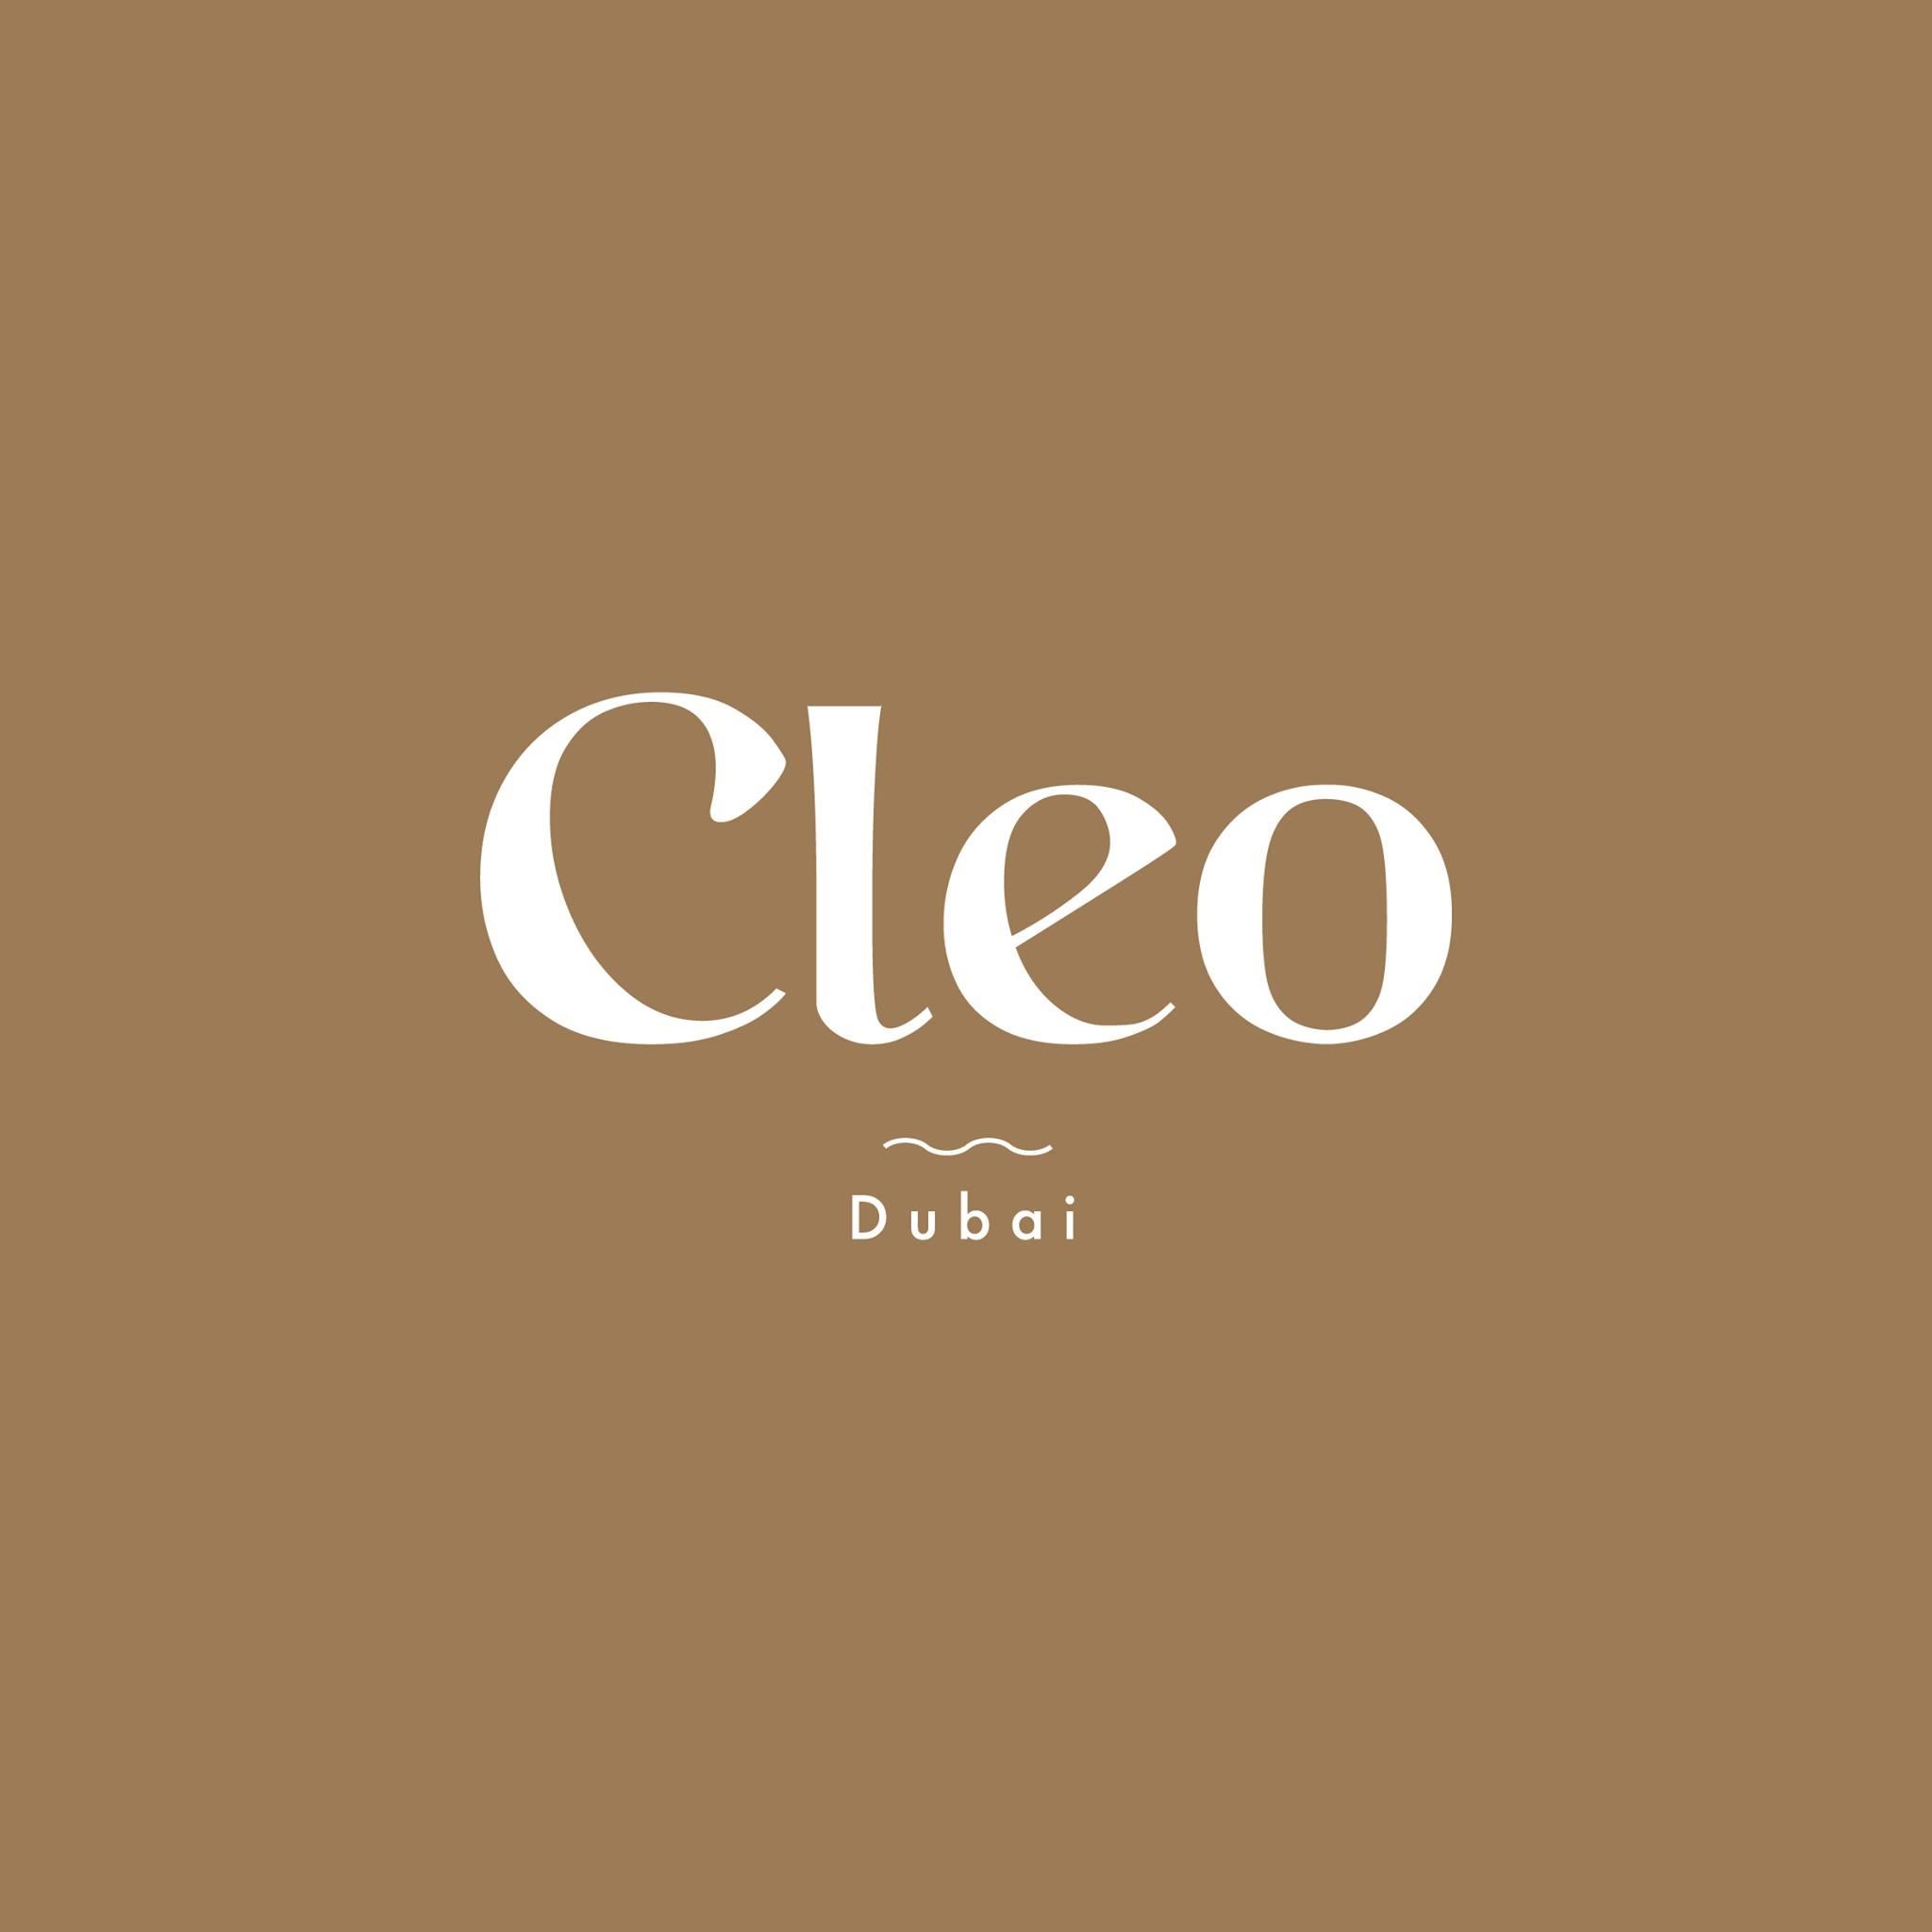 Cleo Dubai